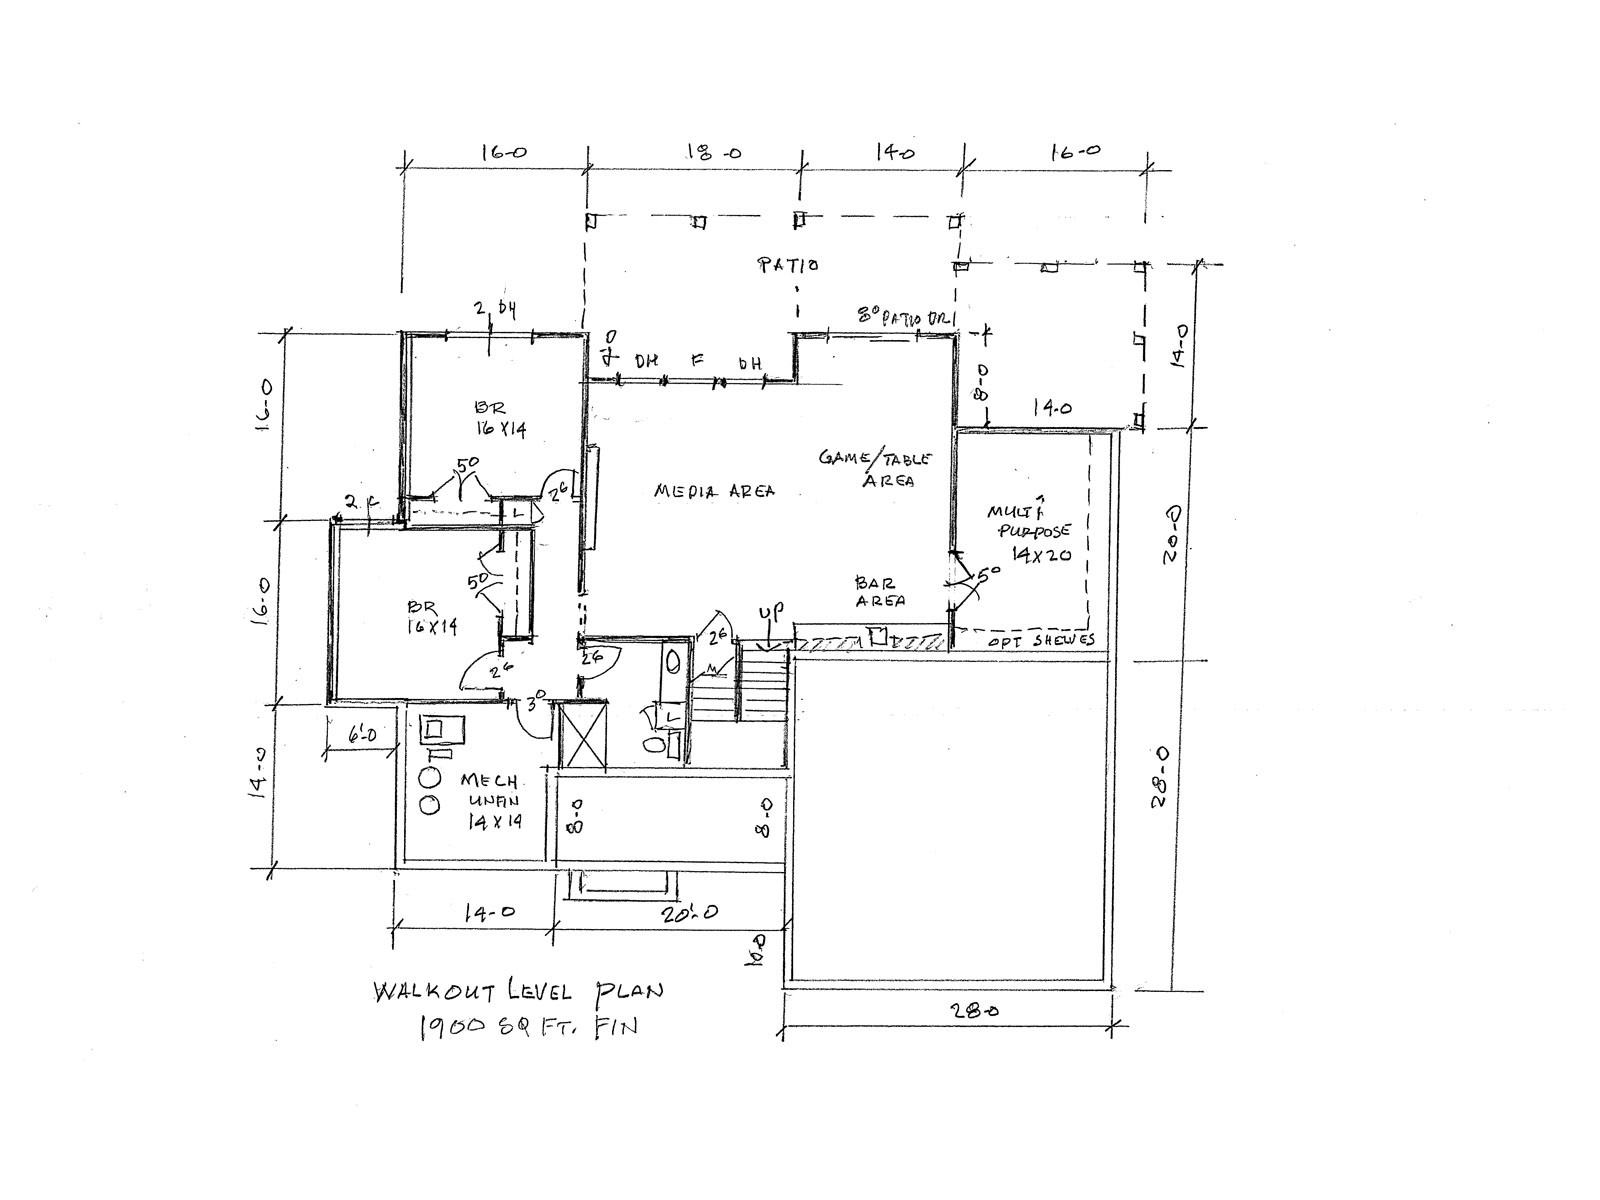 Hakan Home Plan Walkout Level Floor Plan